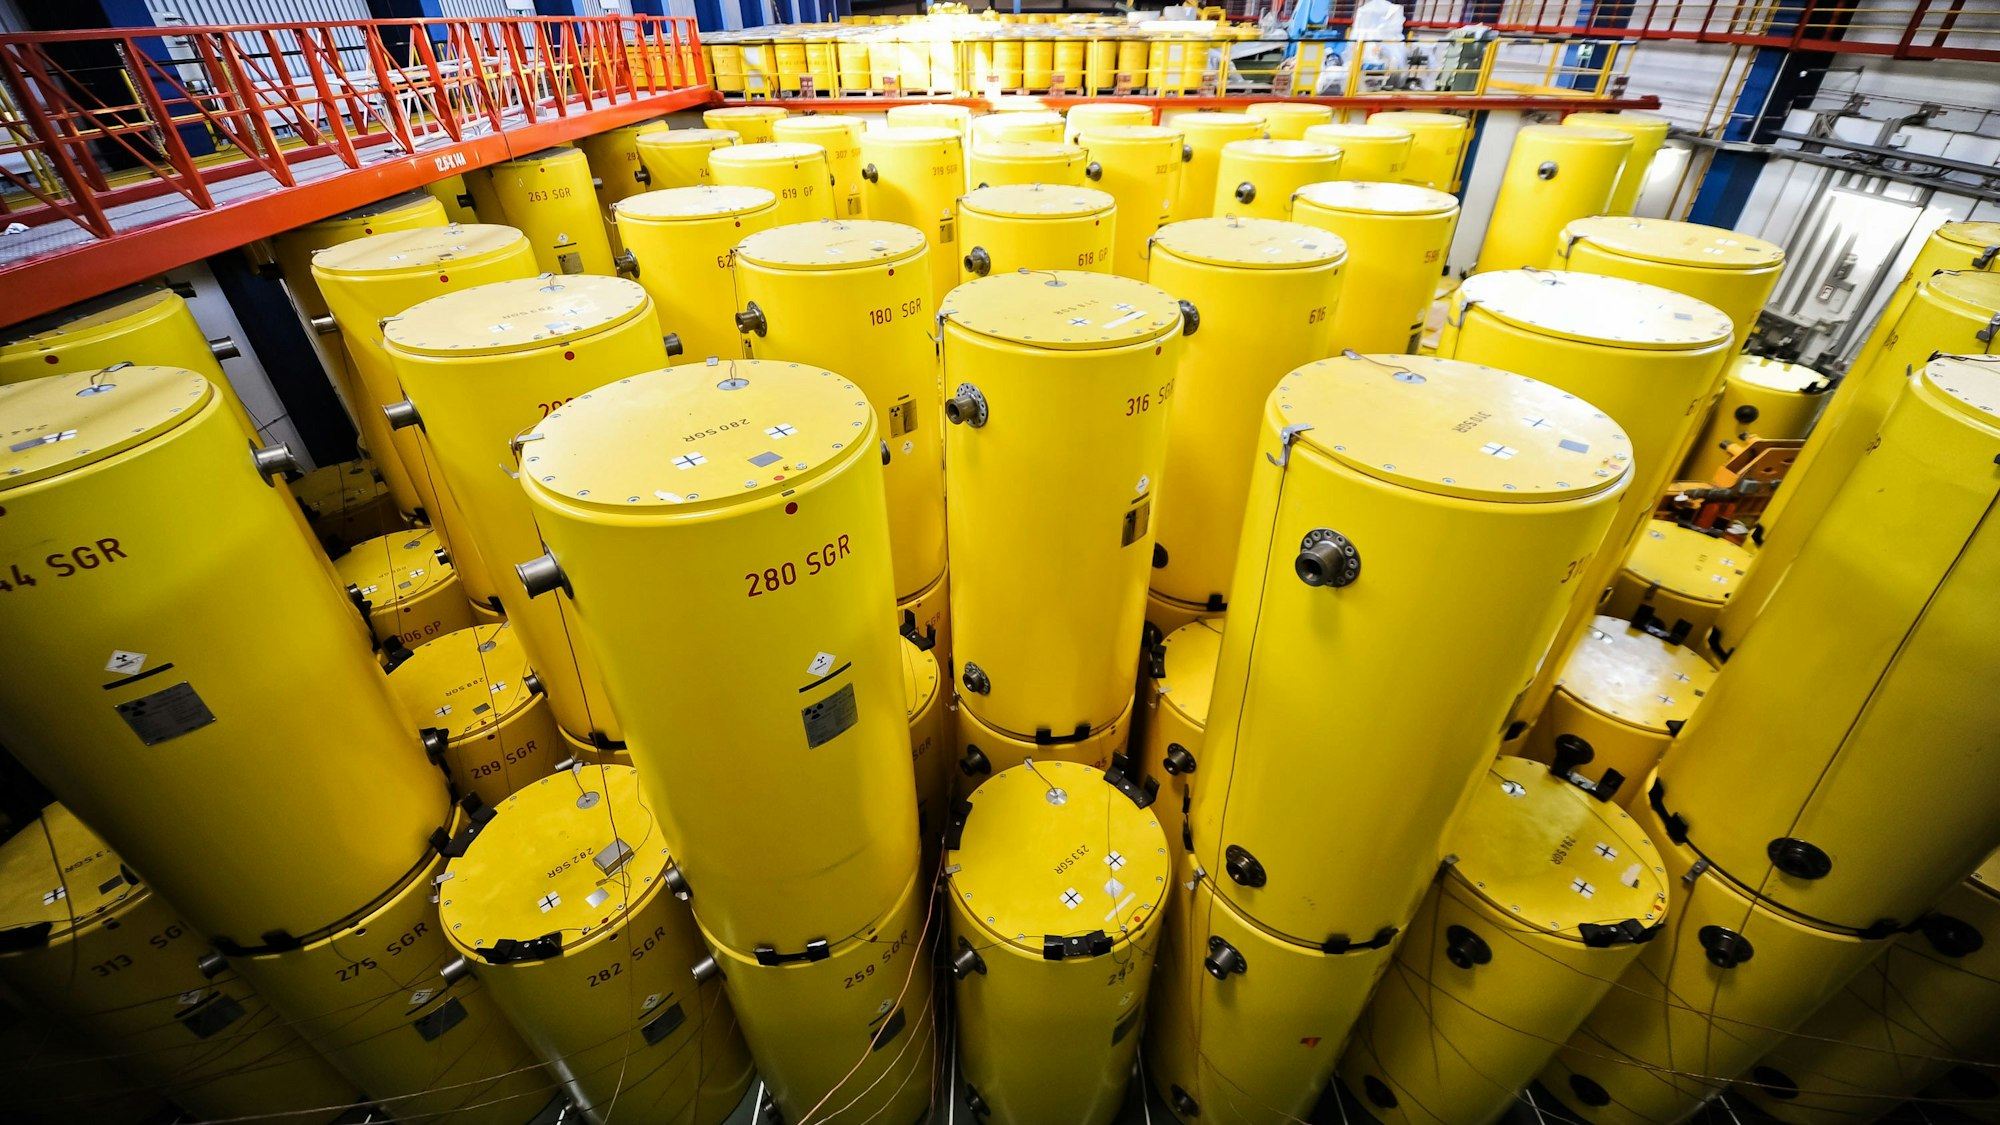 Etliche gelbe, zylindrische Castor-Behälter stehen in einer Lagerhalle.